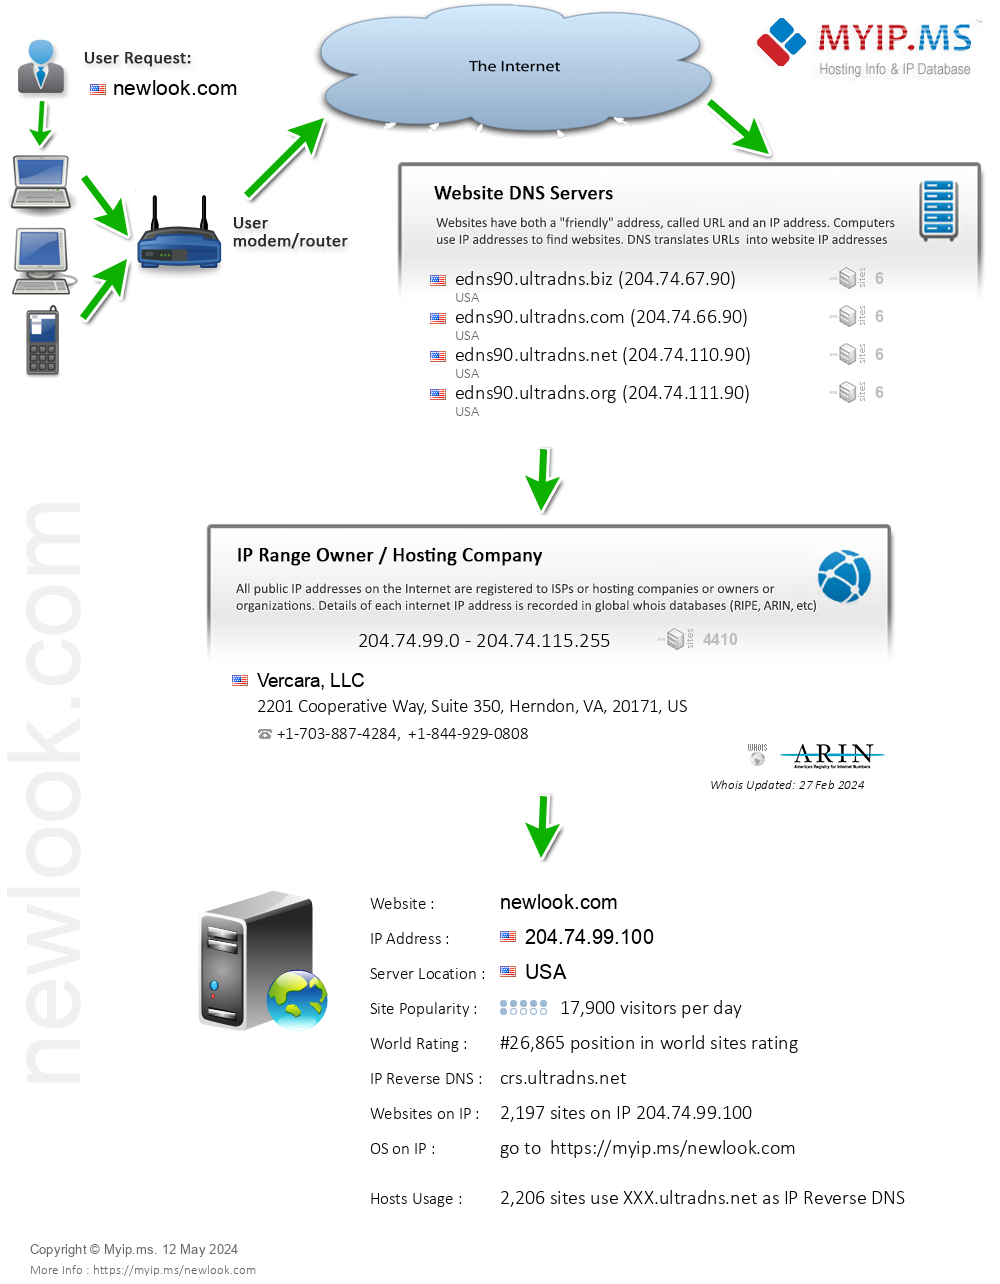 Newlook.com - Website Hosting Visual IP Diagram